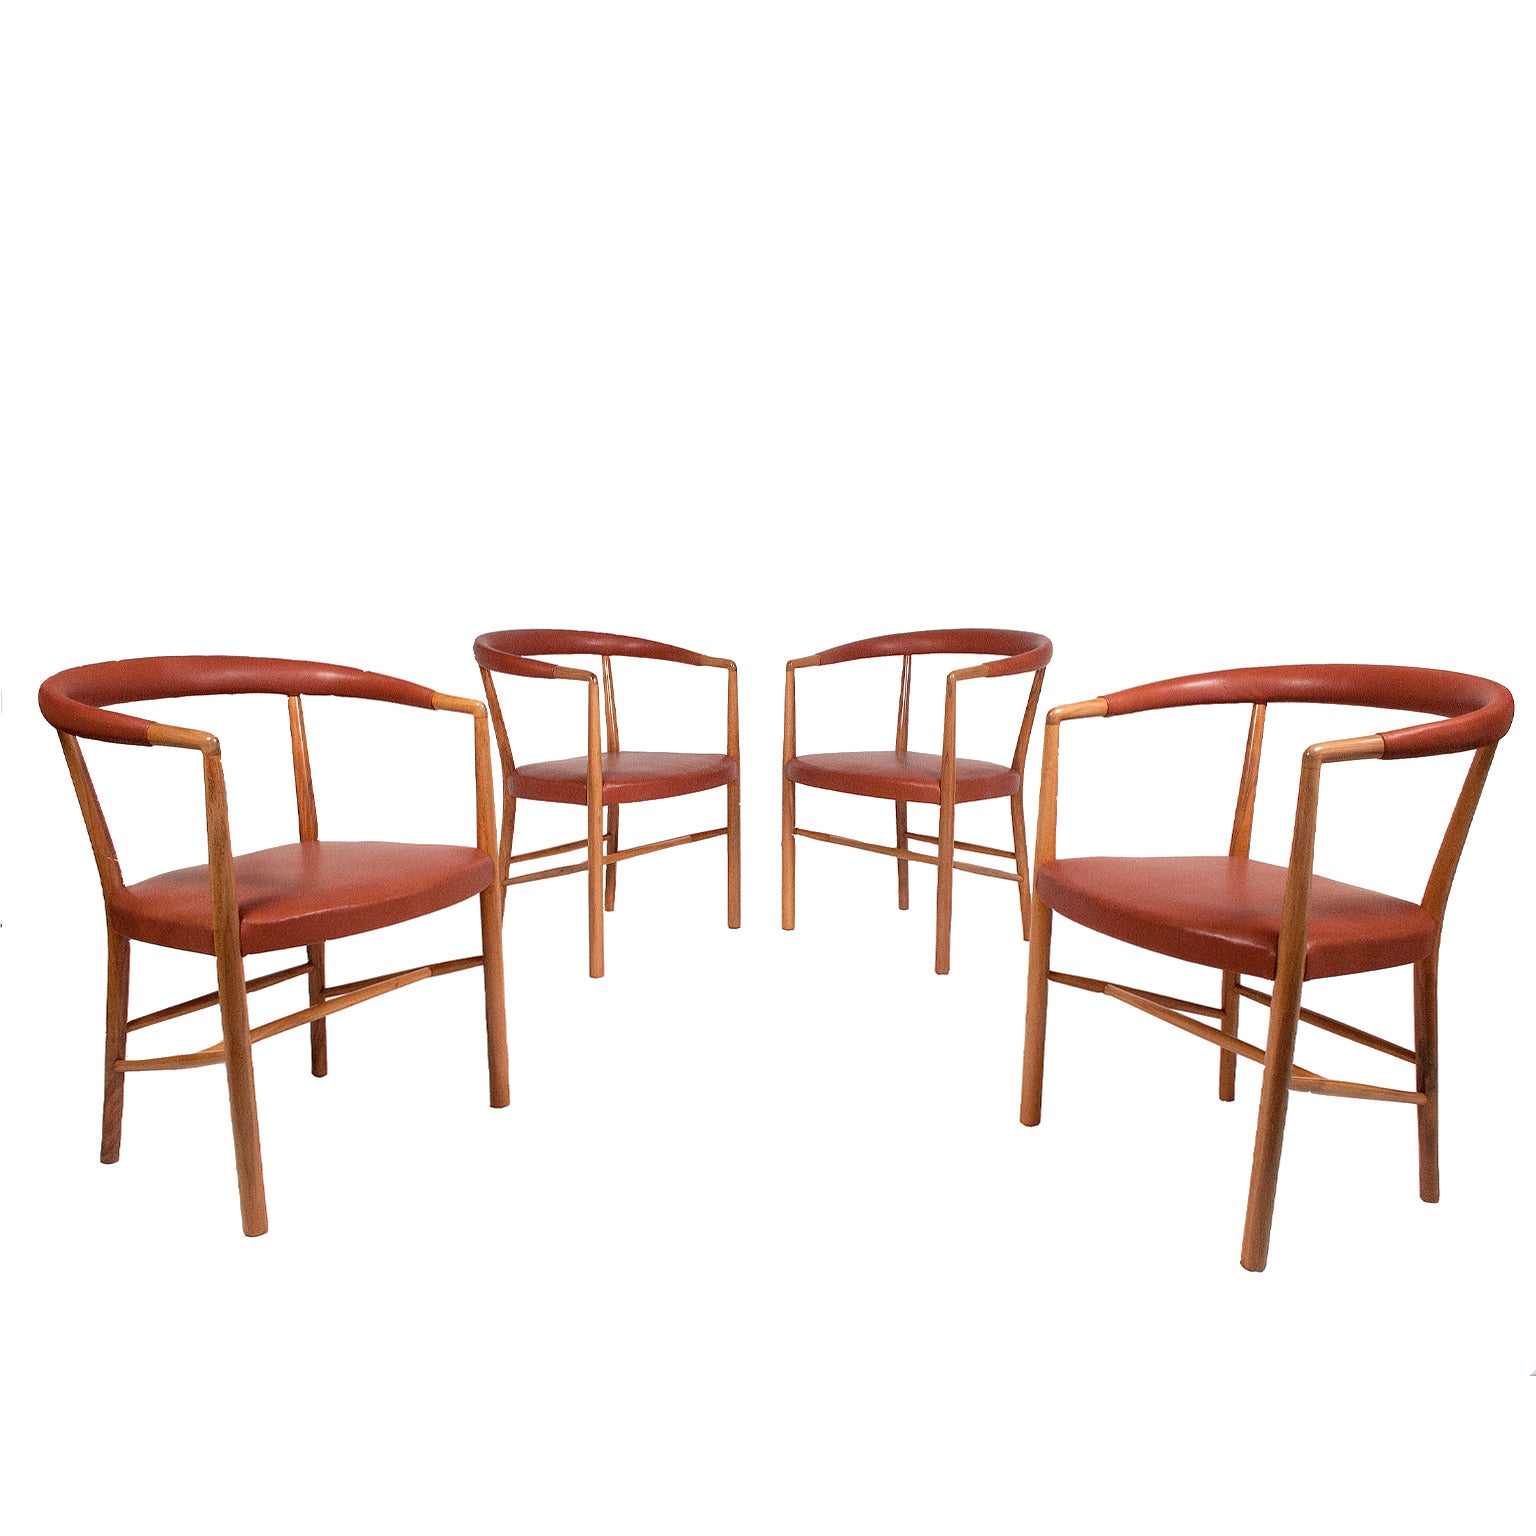 Jacob Kjaer Set of Four UN Chairs